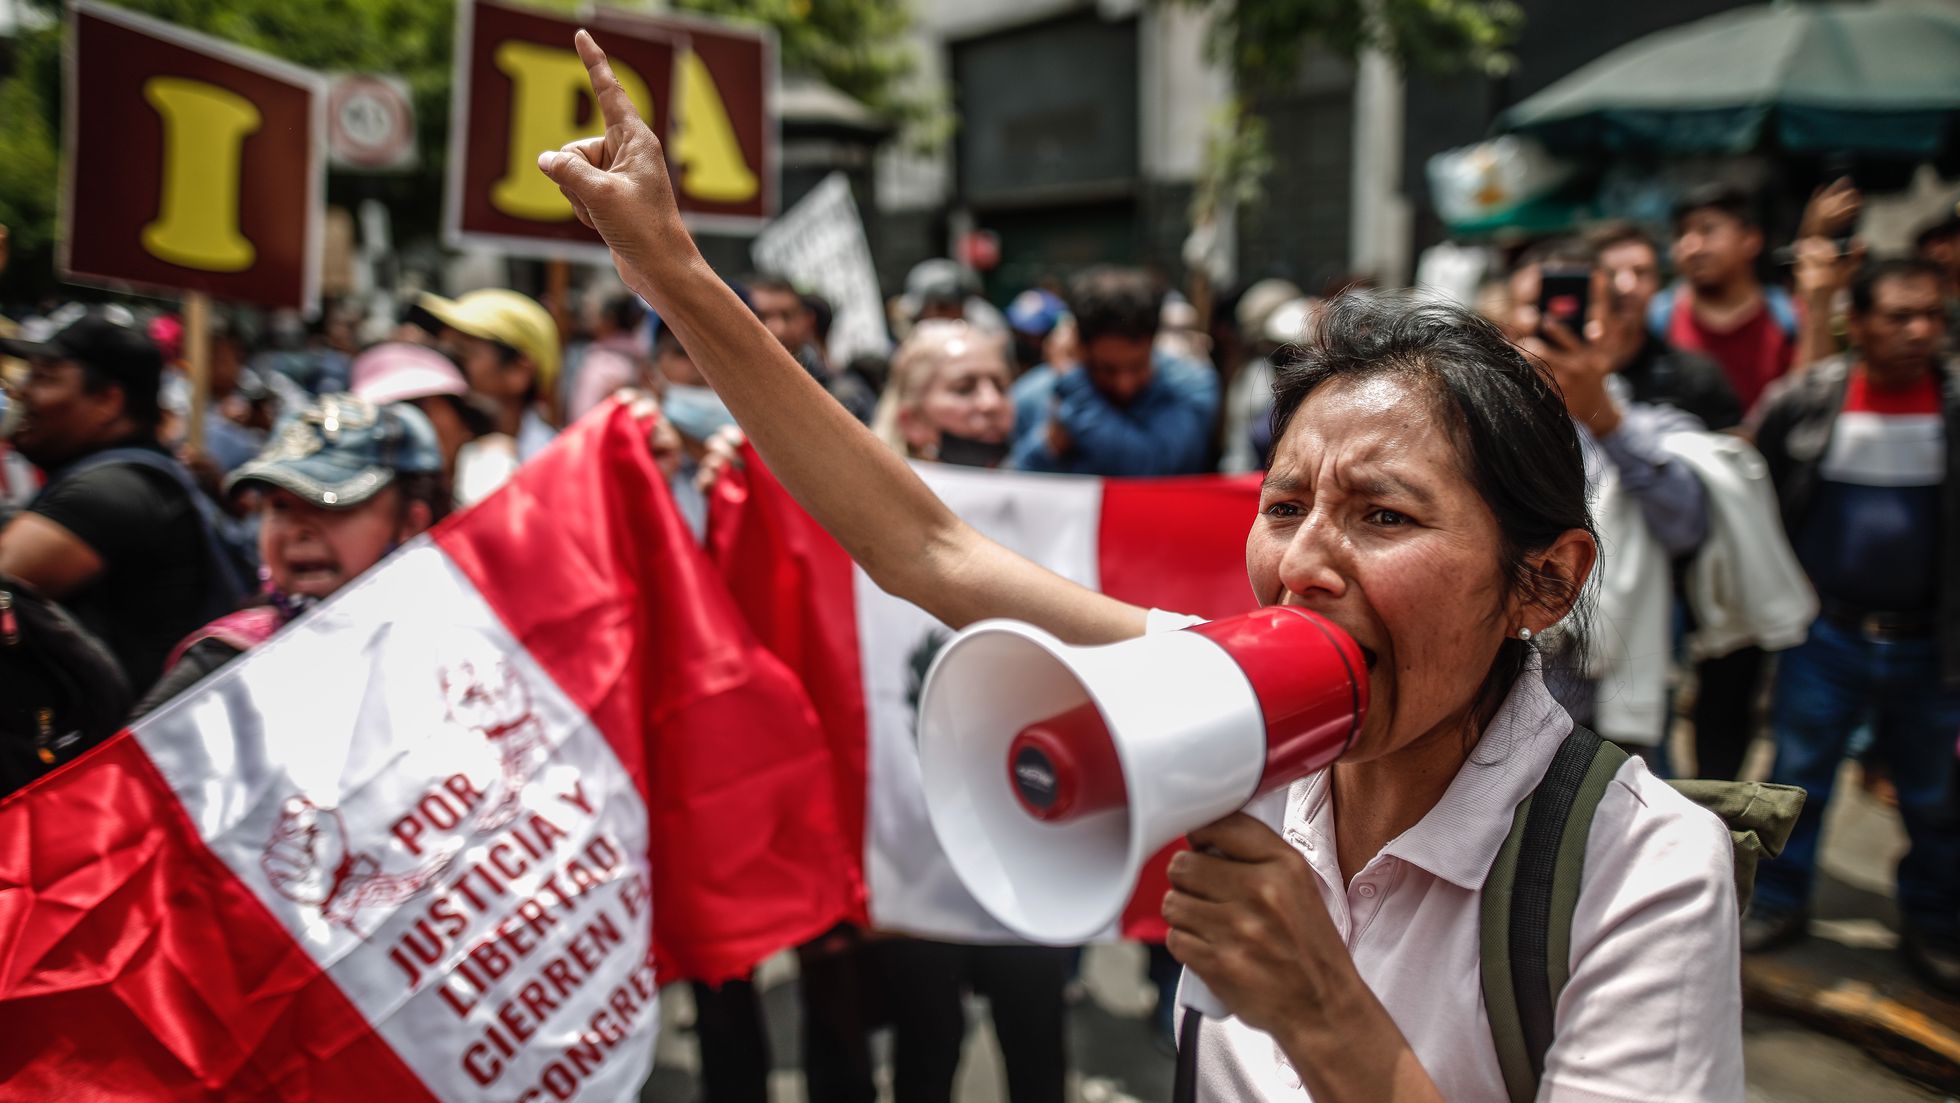  Crisis en Perú: ¡No podemos callar!